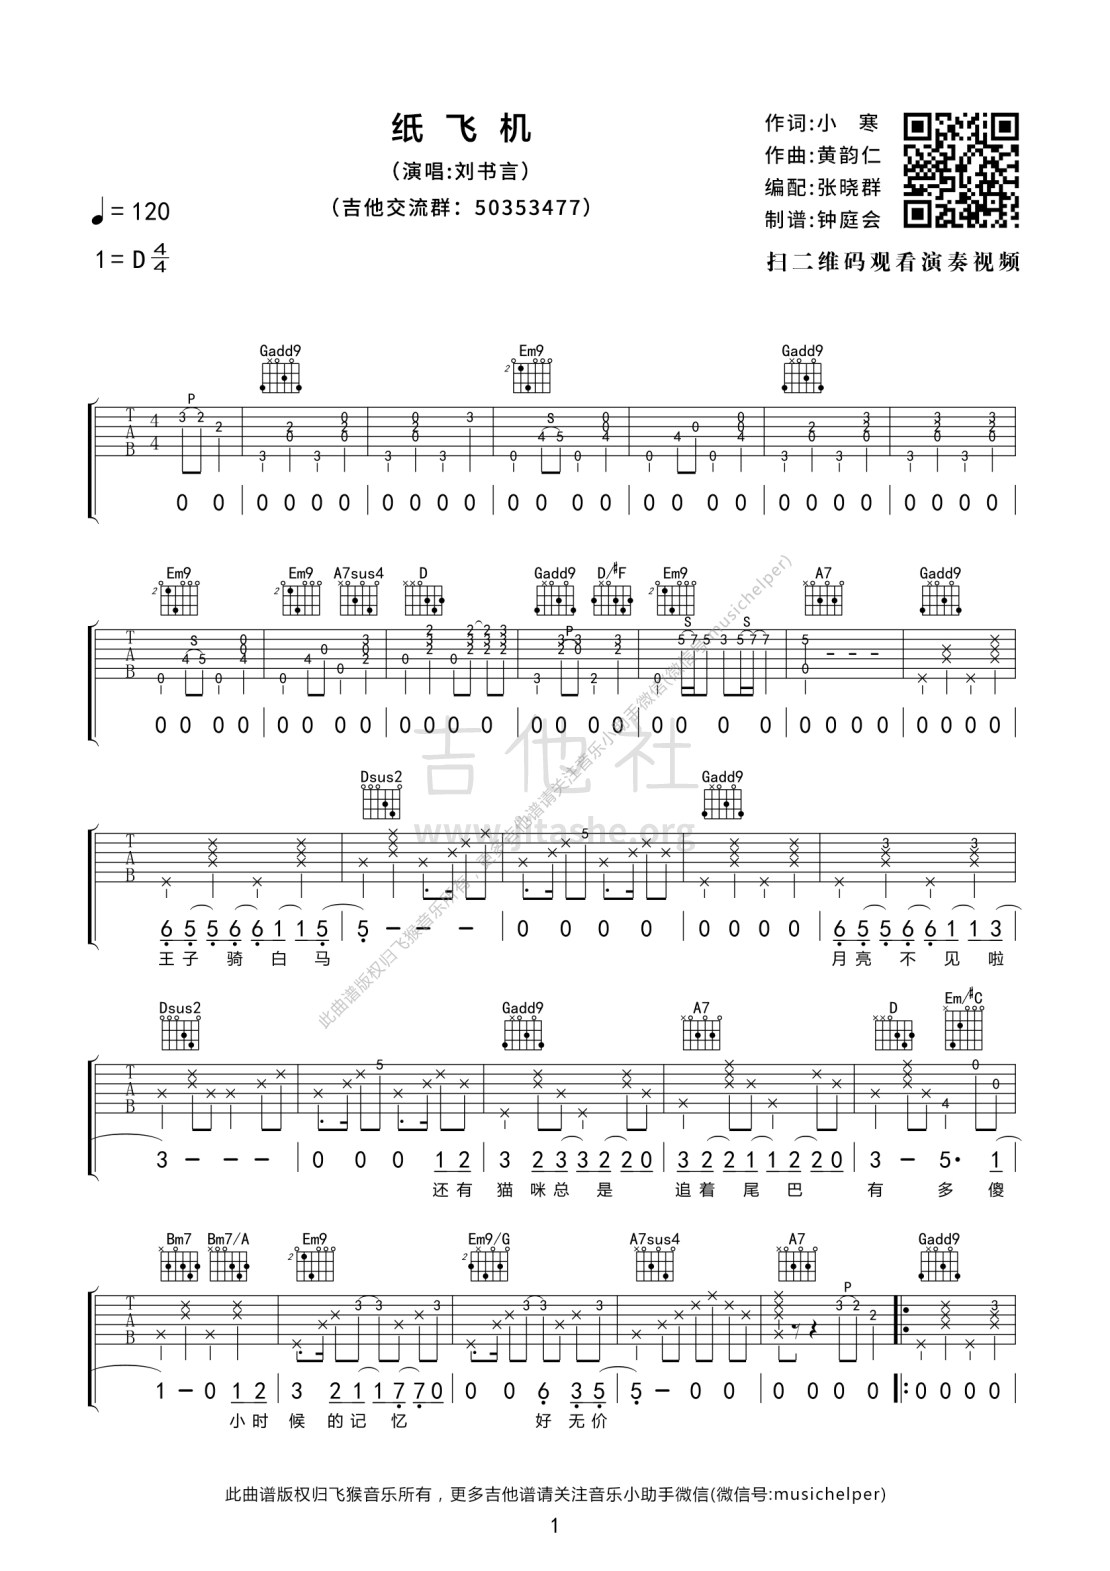 打印:纸飞机(吉他弹唱|飞猴乐器制作出品)吉他谱_刘书言_纸飞机 01.jpg